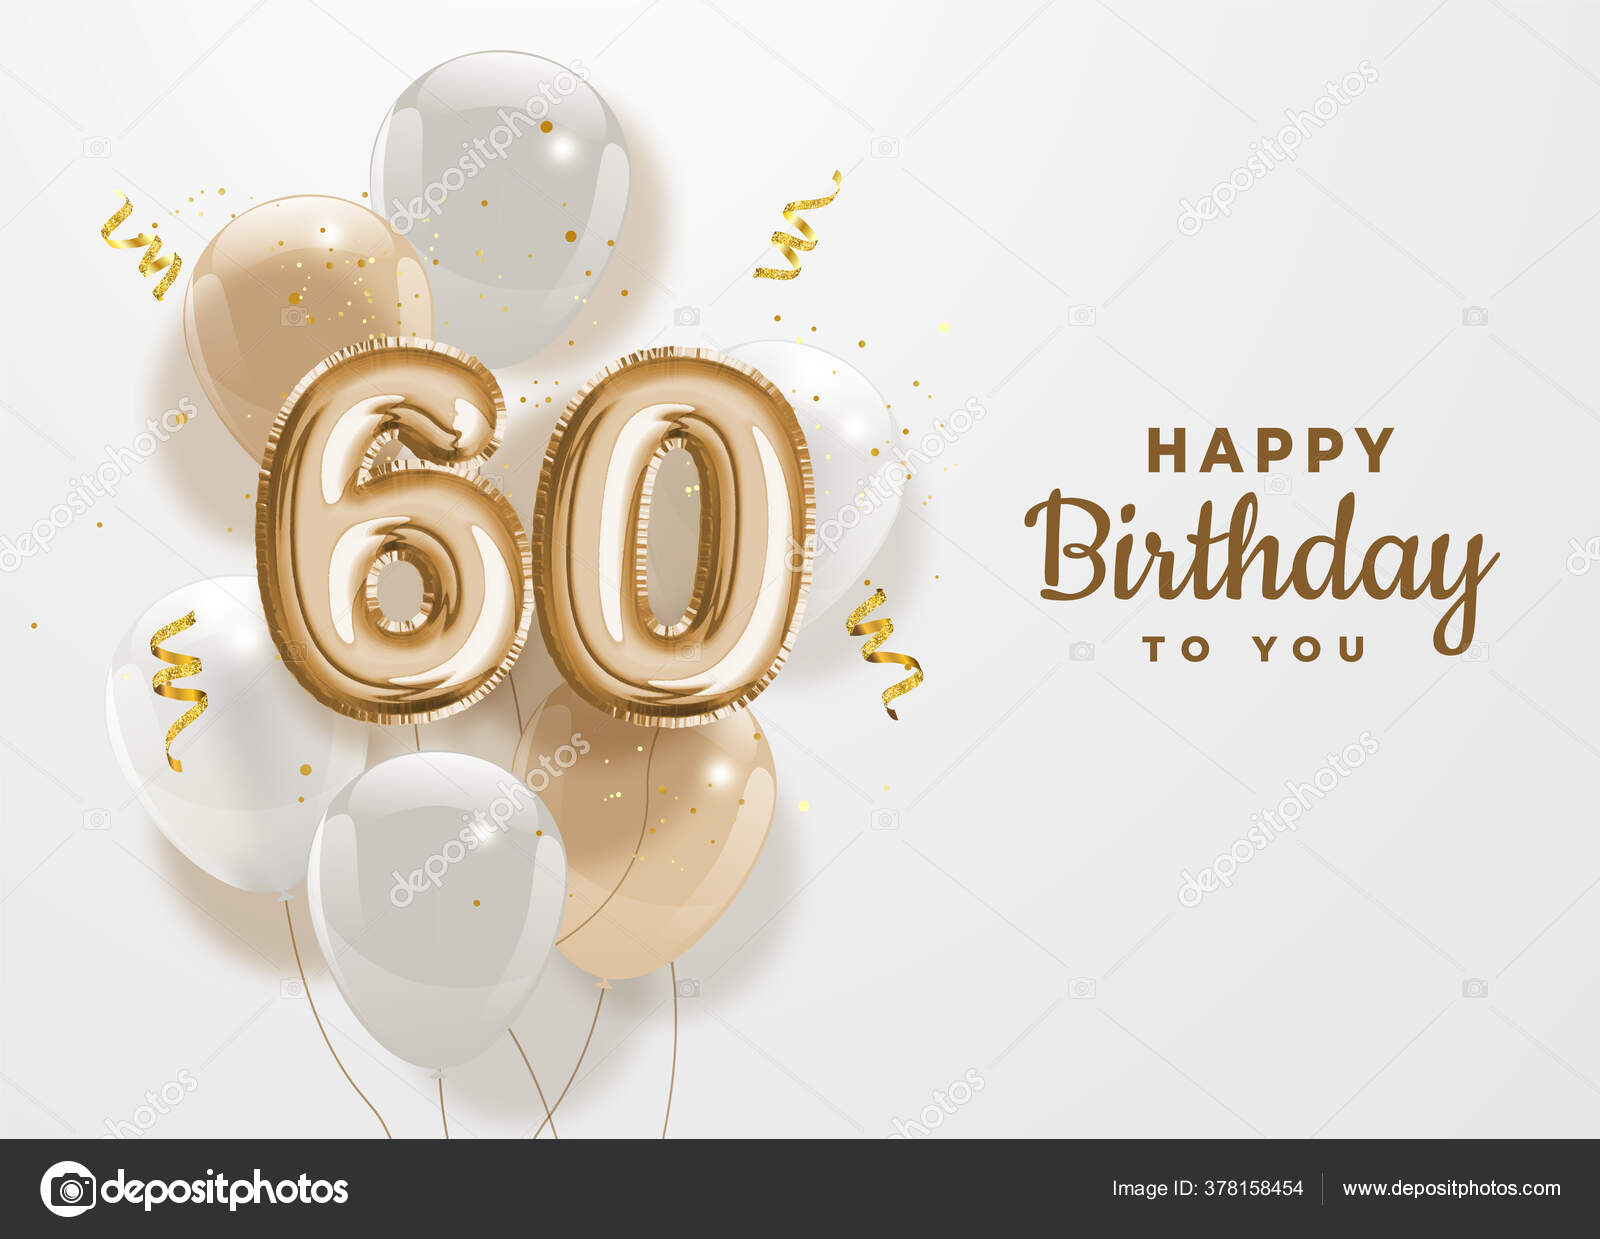 Chúc mừng sinh nhật 60 tuổi! Đây là một dịp đặc biệt để chúc mừng và kỷ niệm sự trưởng thành của bạn. Hãy xem hình ảnh để tìm hiểu cách các người thân yêu của bạn đã ăn mừng ngày sinh nhật 60 tuổi của bạn.